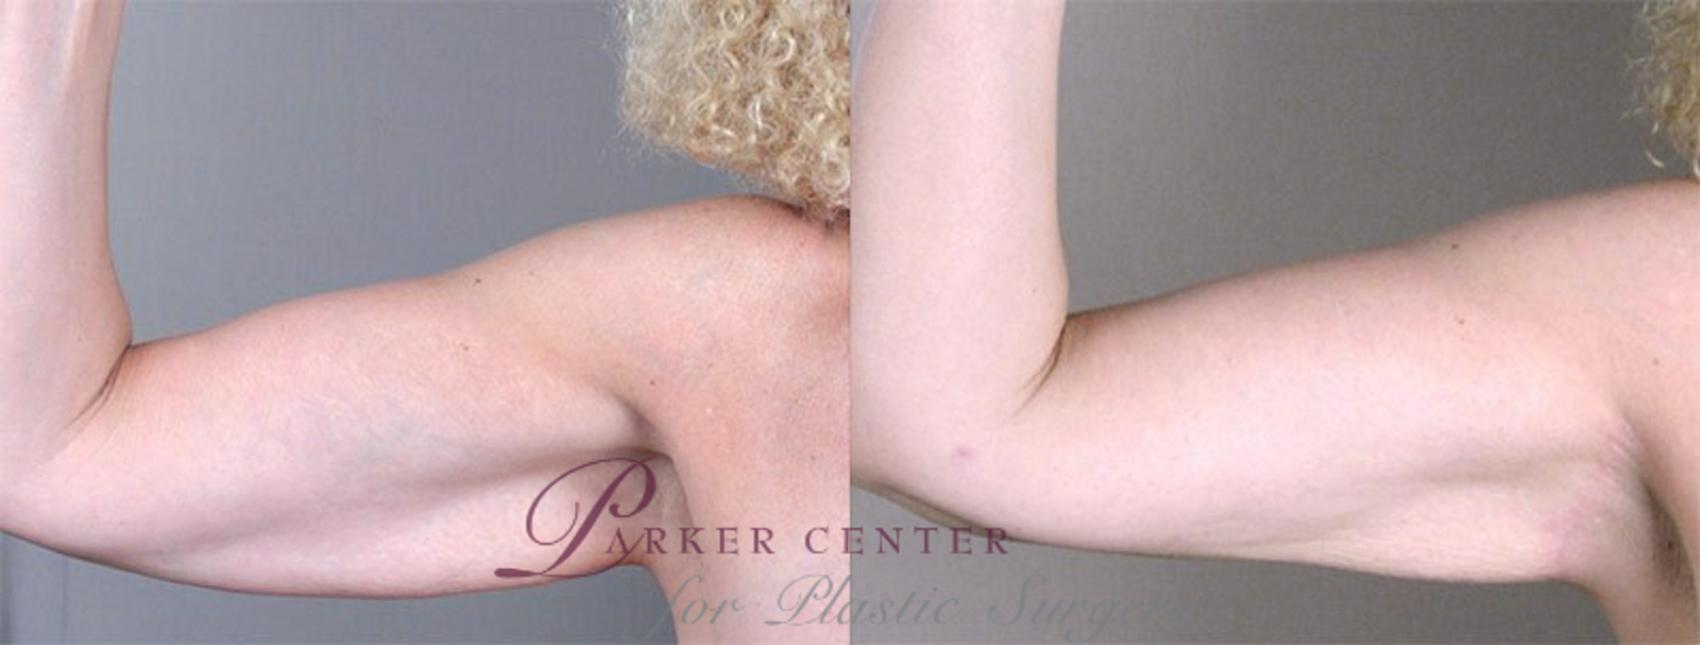 Upper Arm Rejuvenation Case 826 Before & After View #1 | Paramus, NJ | Parker Center for Plastic Surgery